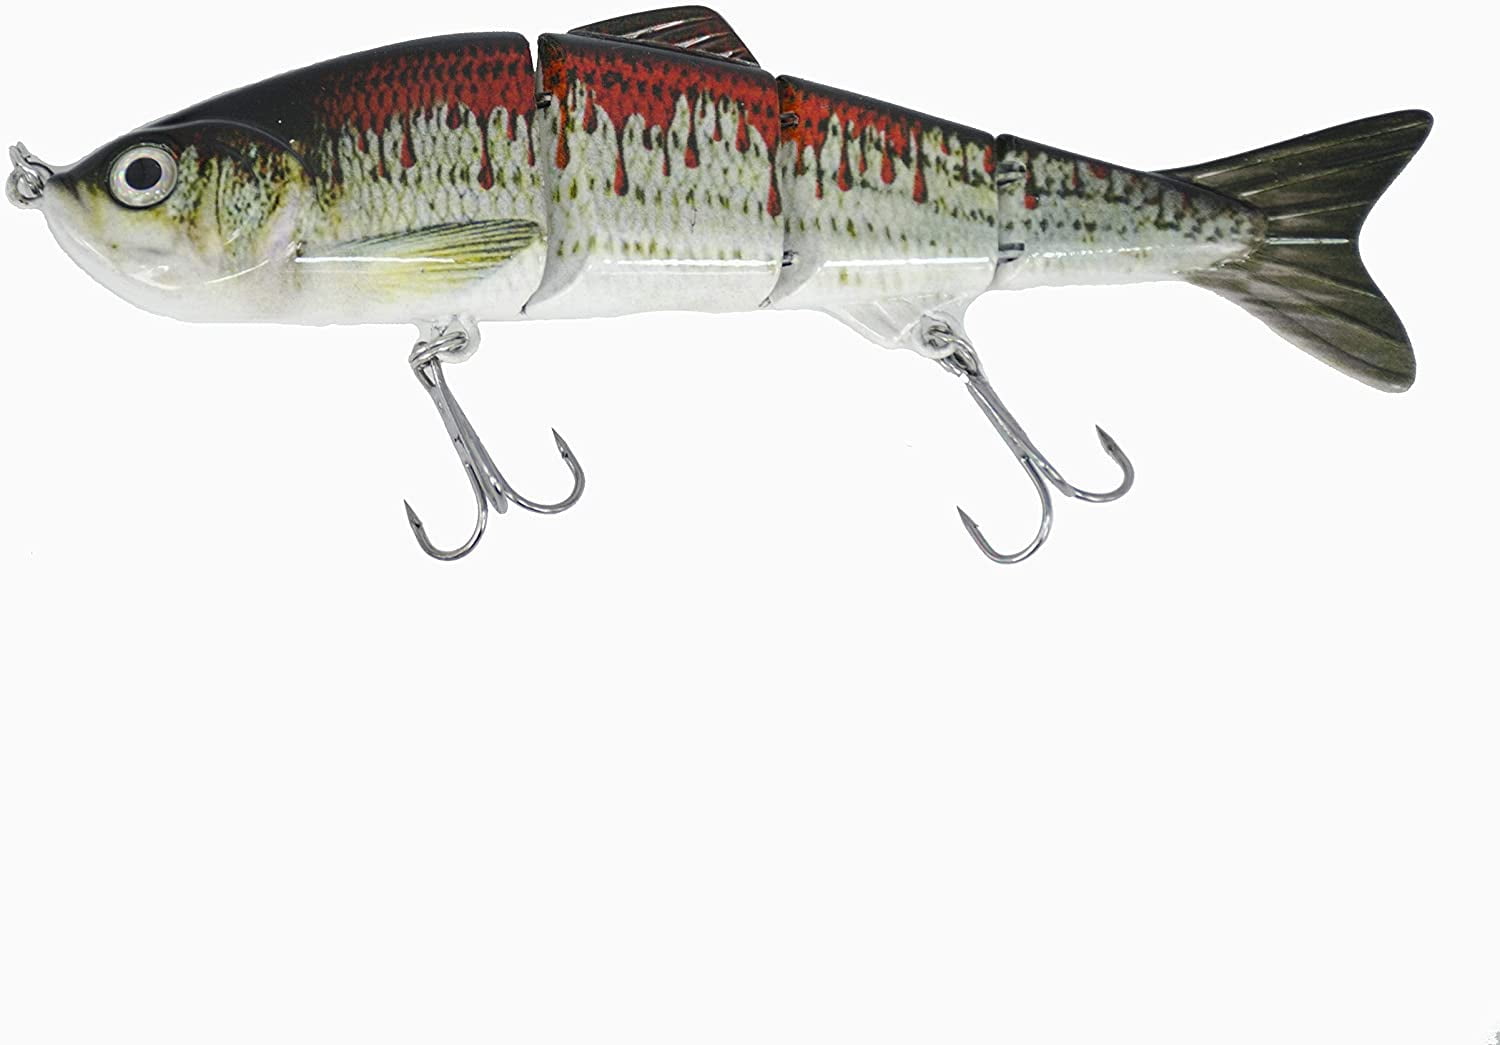 215mm/89g Big Tuna Mackerel Lures Best Swimbaits Freshwater